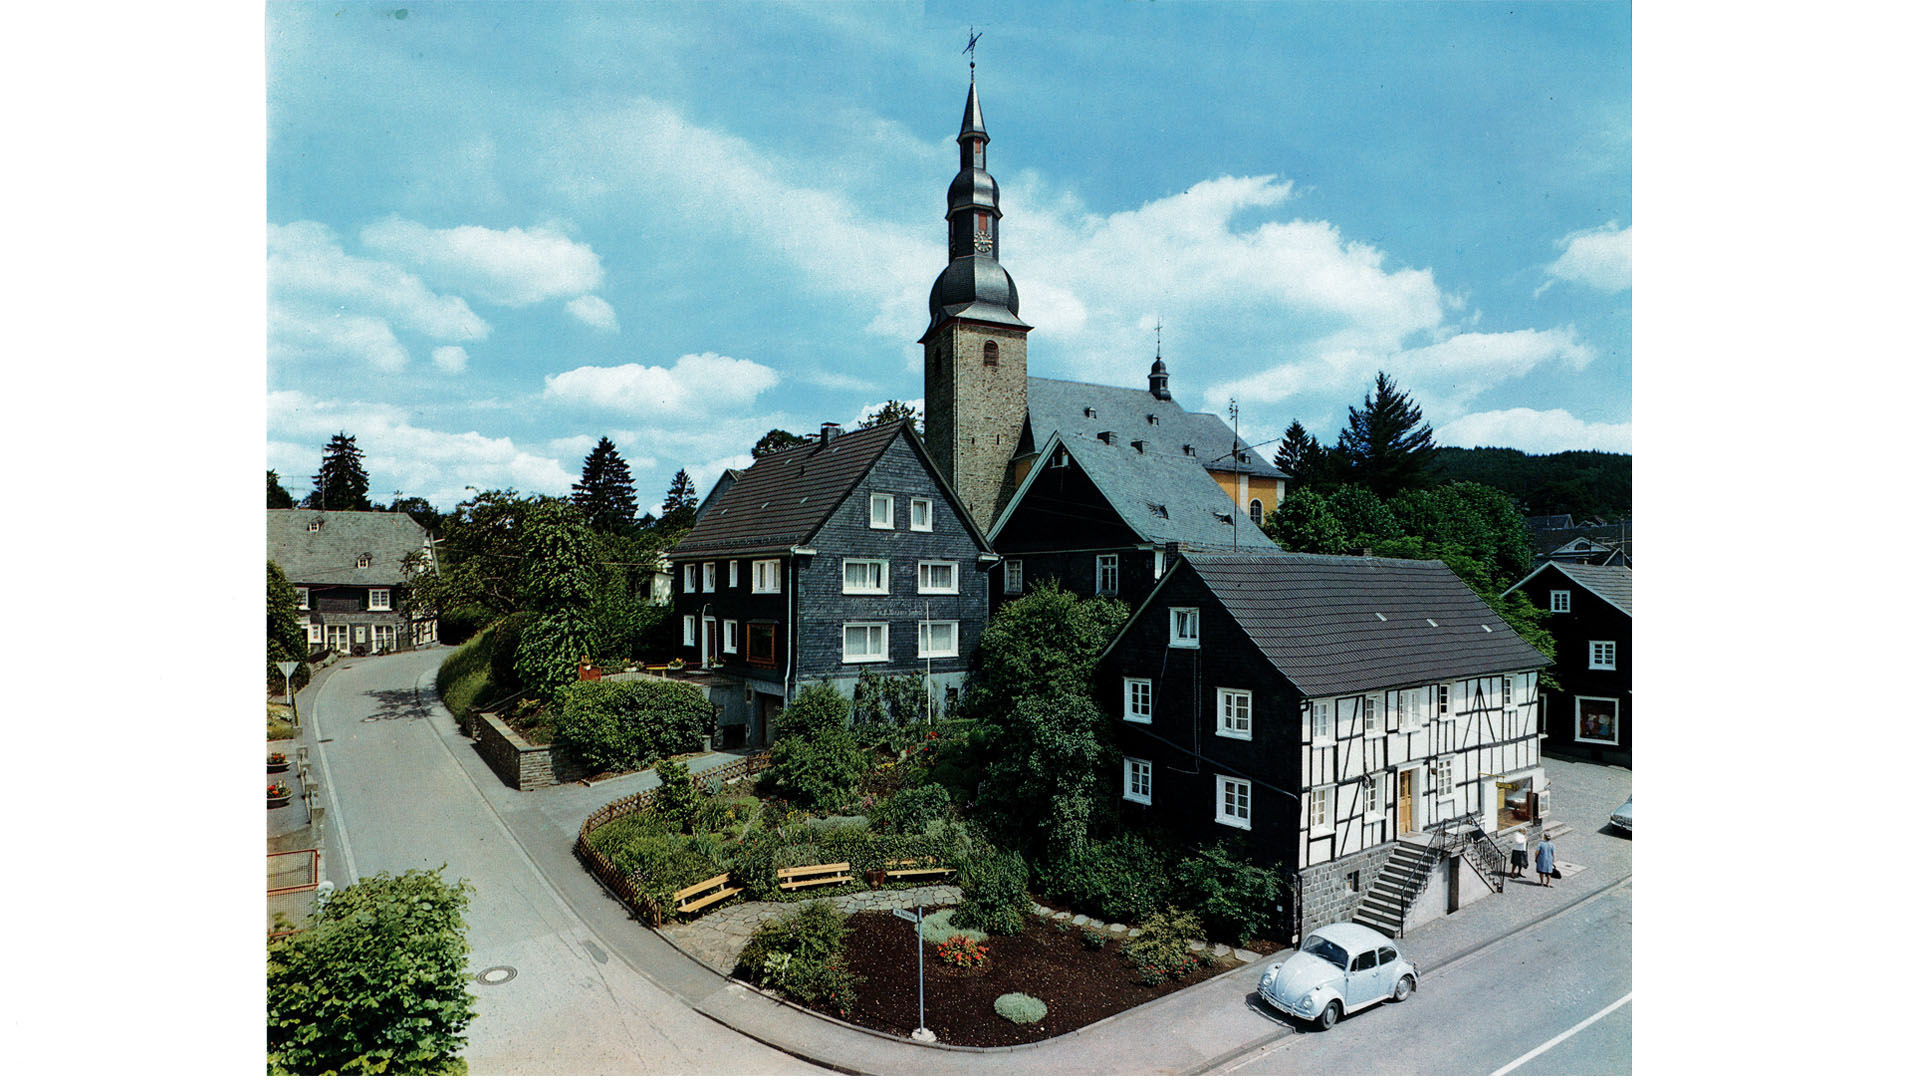 Eckenhagen: Gutbürgerliches, gemütliches Fachwerkhaus mit Garten, Panorama-Ansicht aus den 70er Jahren